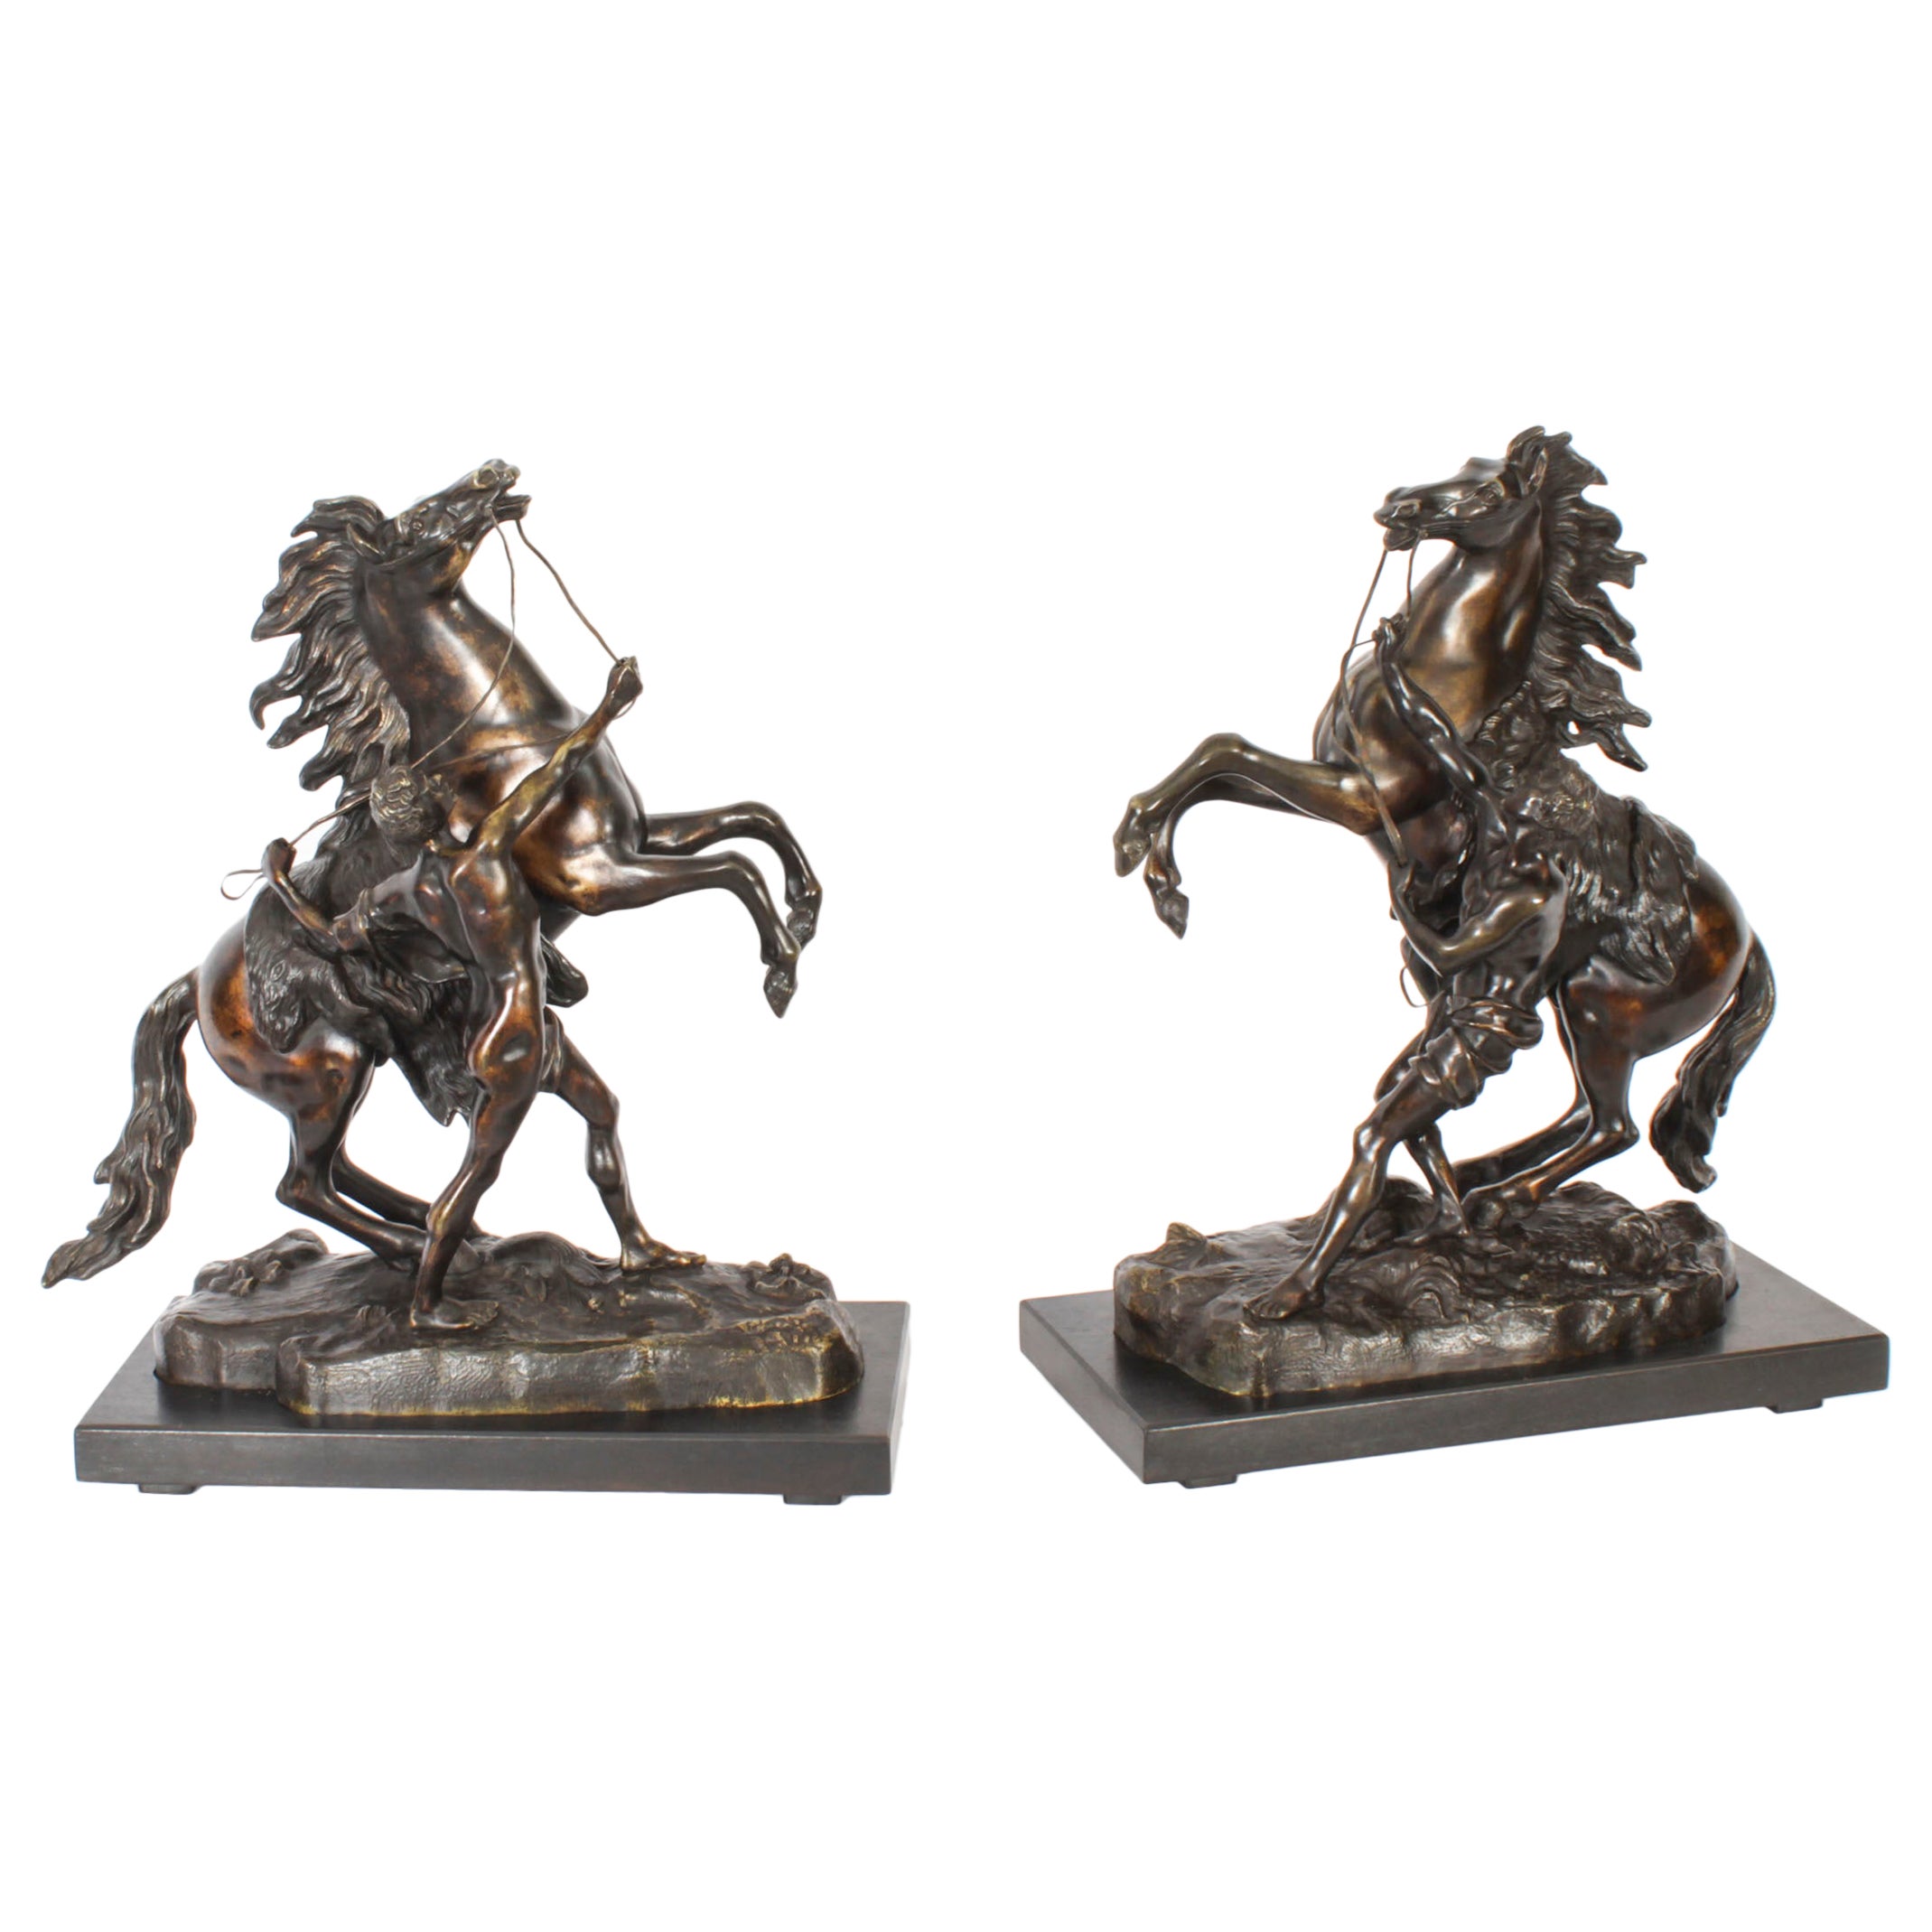 Paire de sculptures françaises de chevaux en bronze par Cousteau 19ème siècle